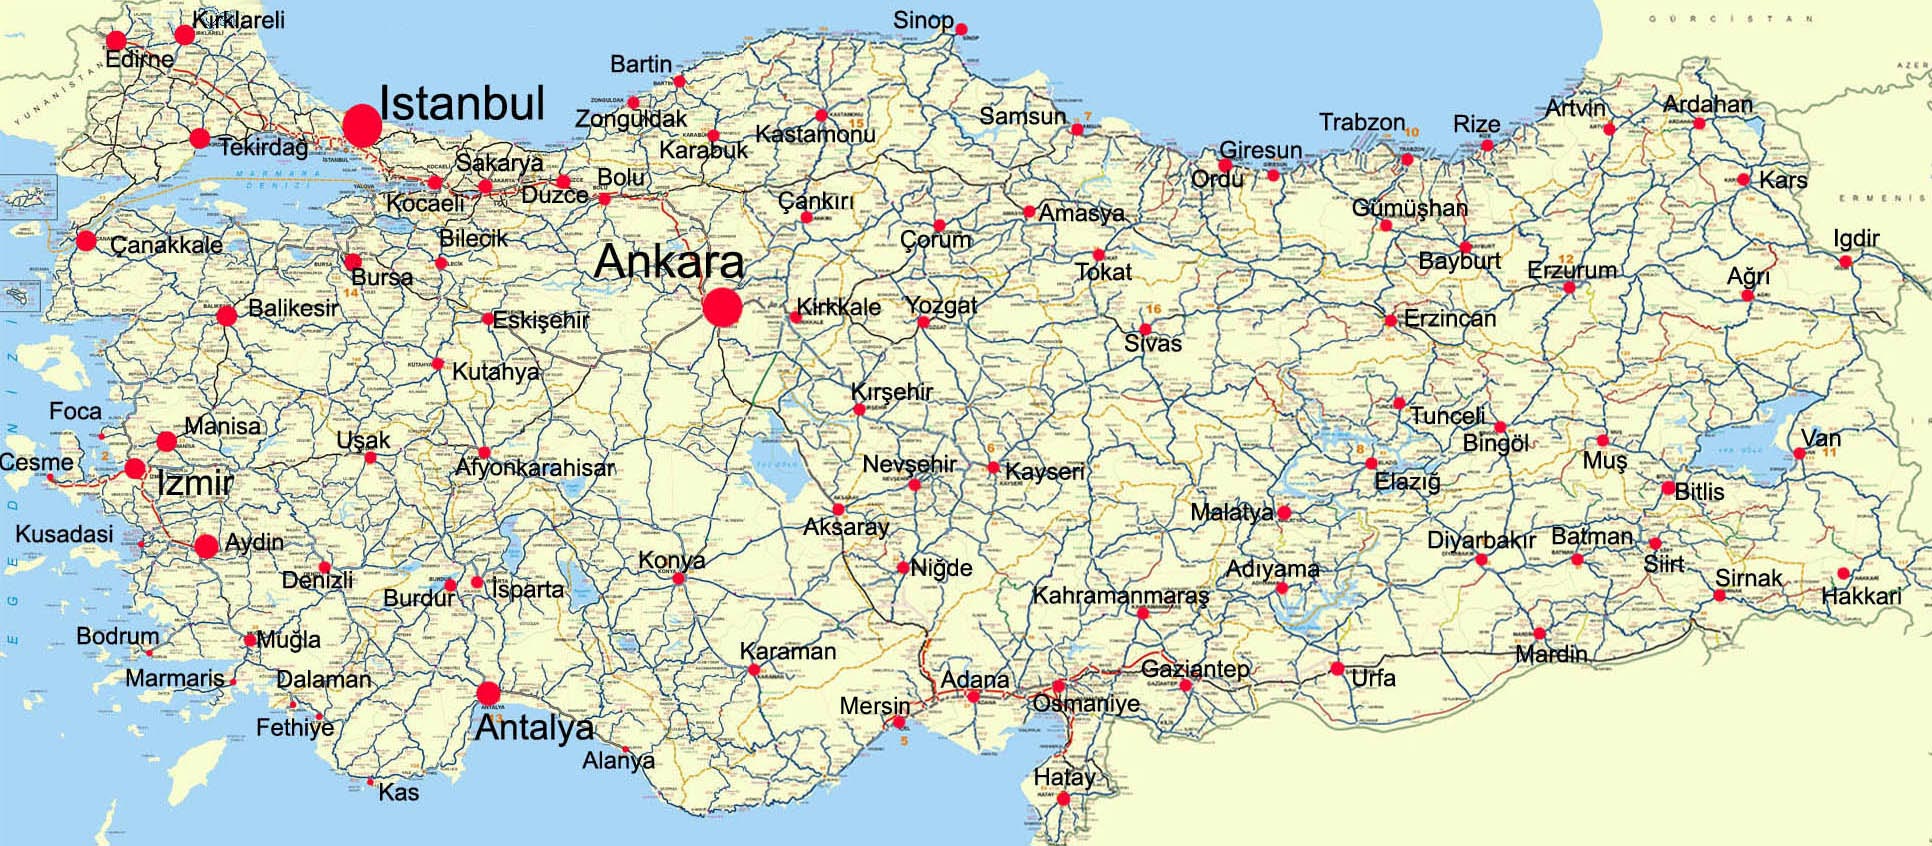 Карта Турции | Подробные, большие карты Турции - cкачать или ...